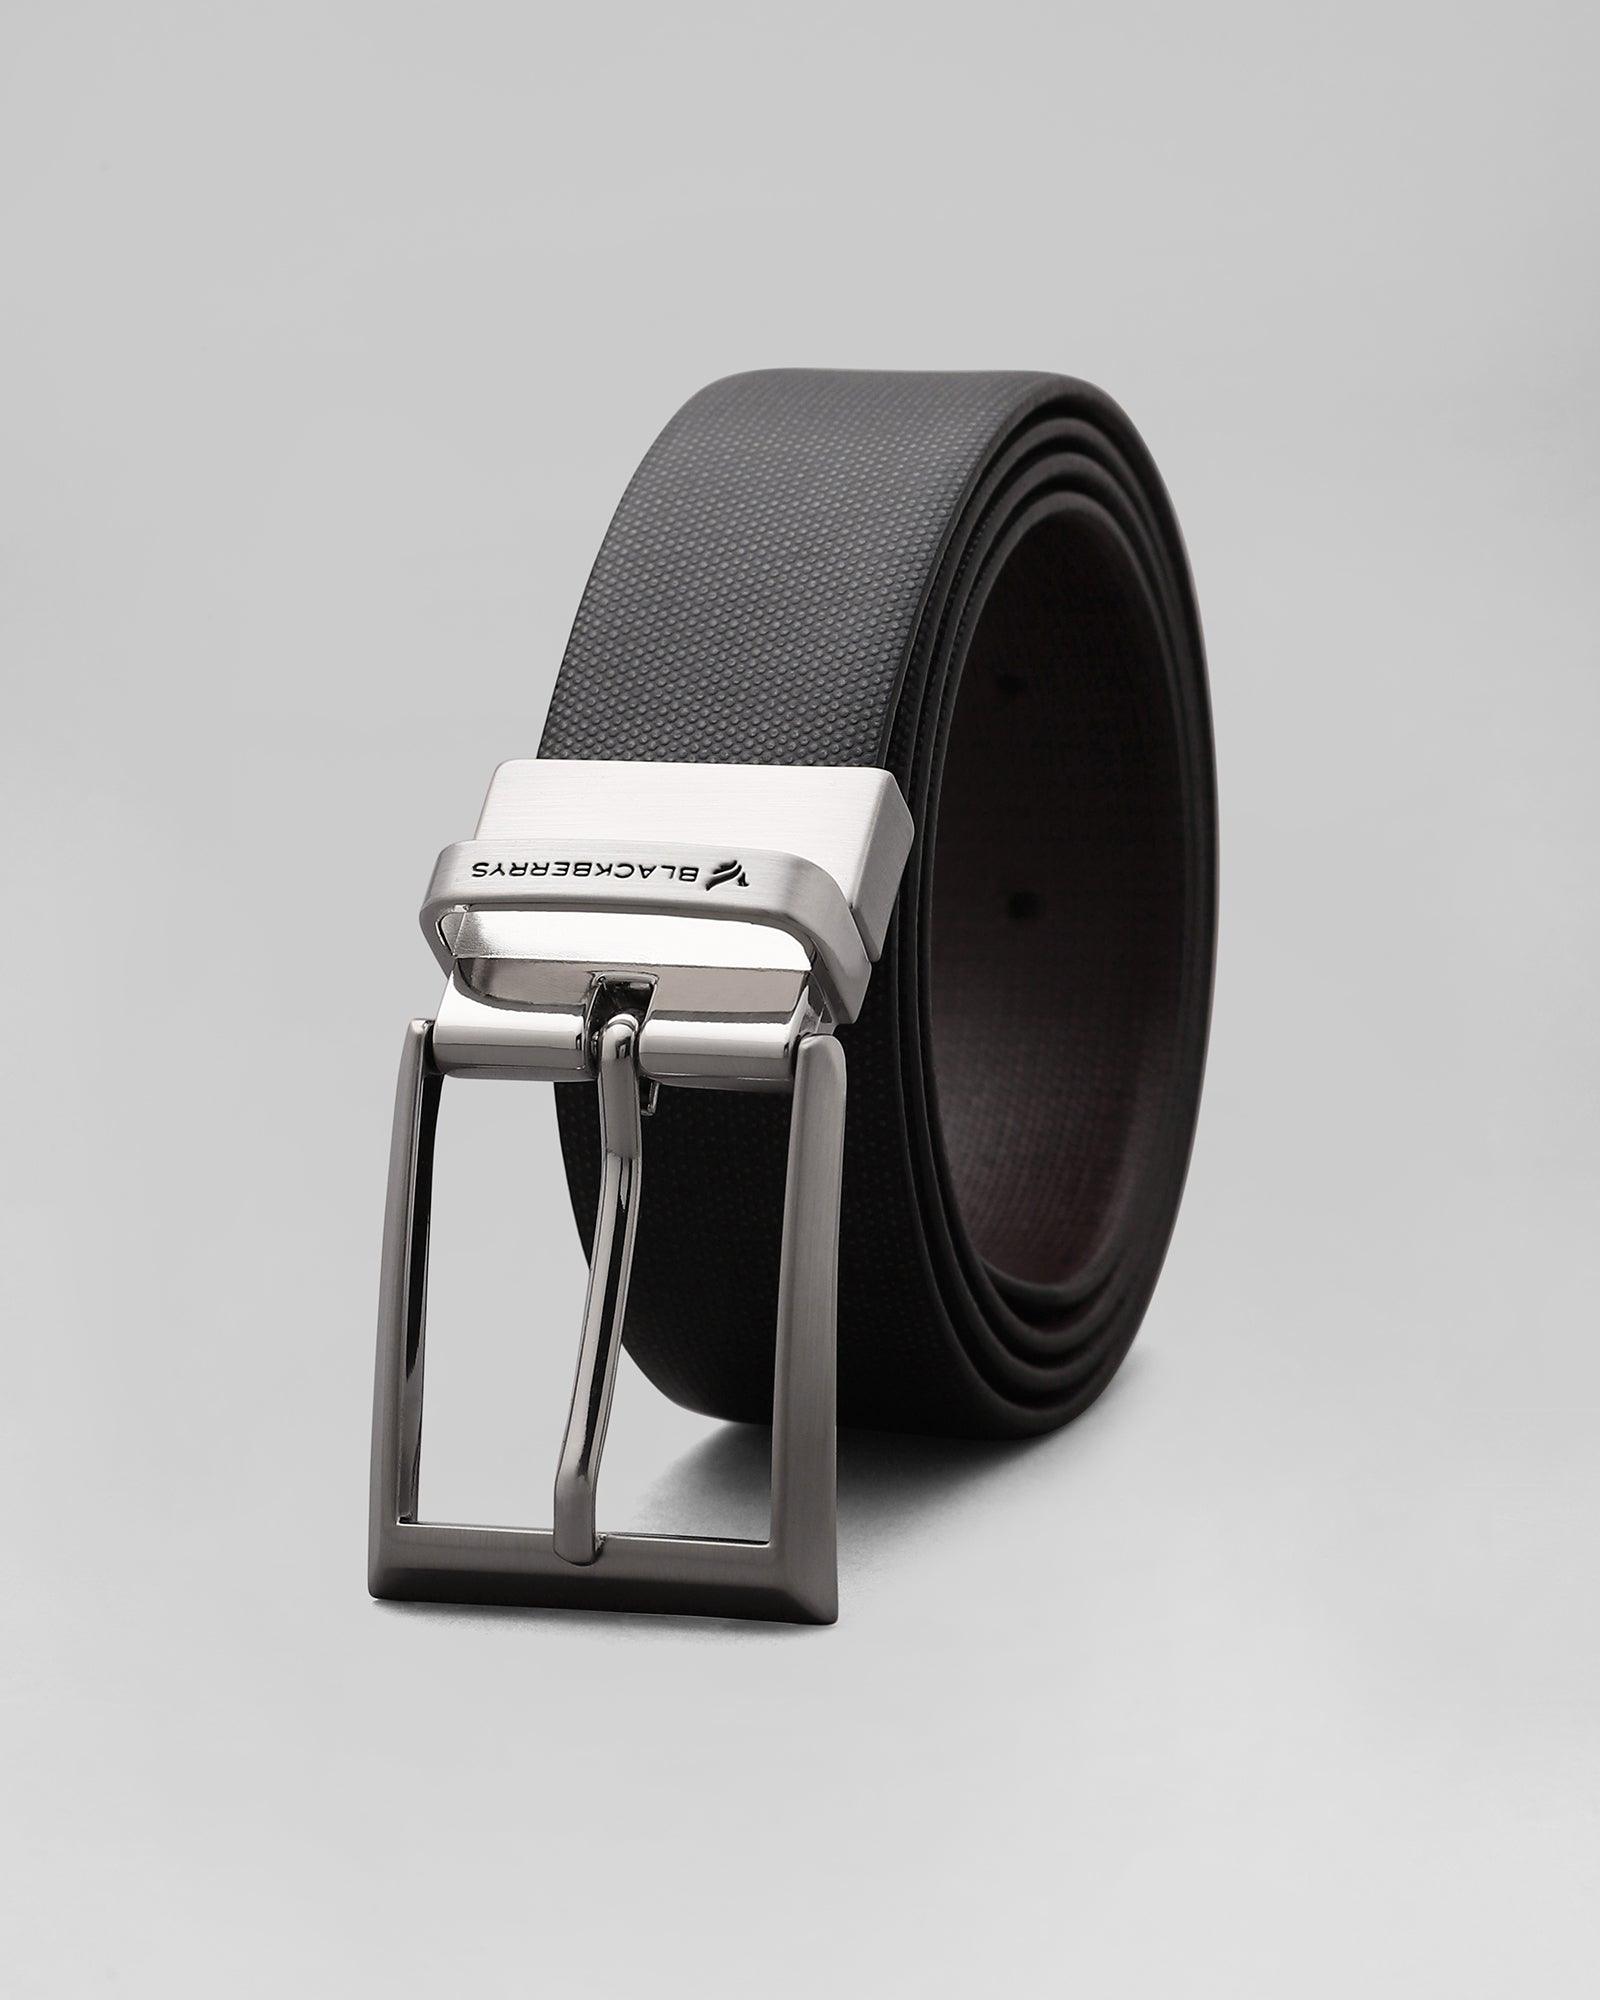 Leather Reversible Black Brown Printed Belt - Phoeb